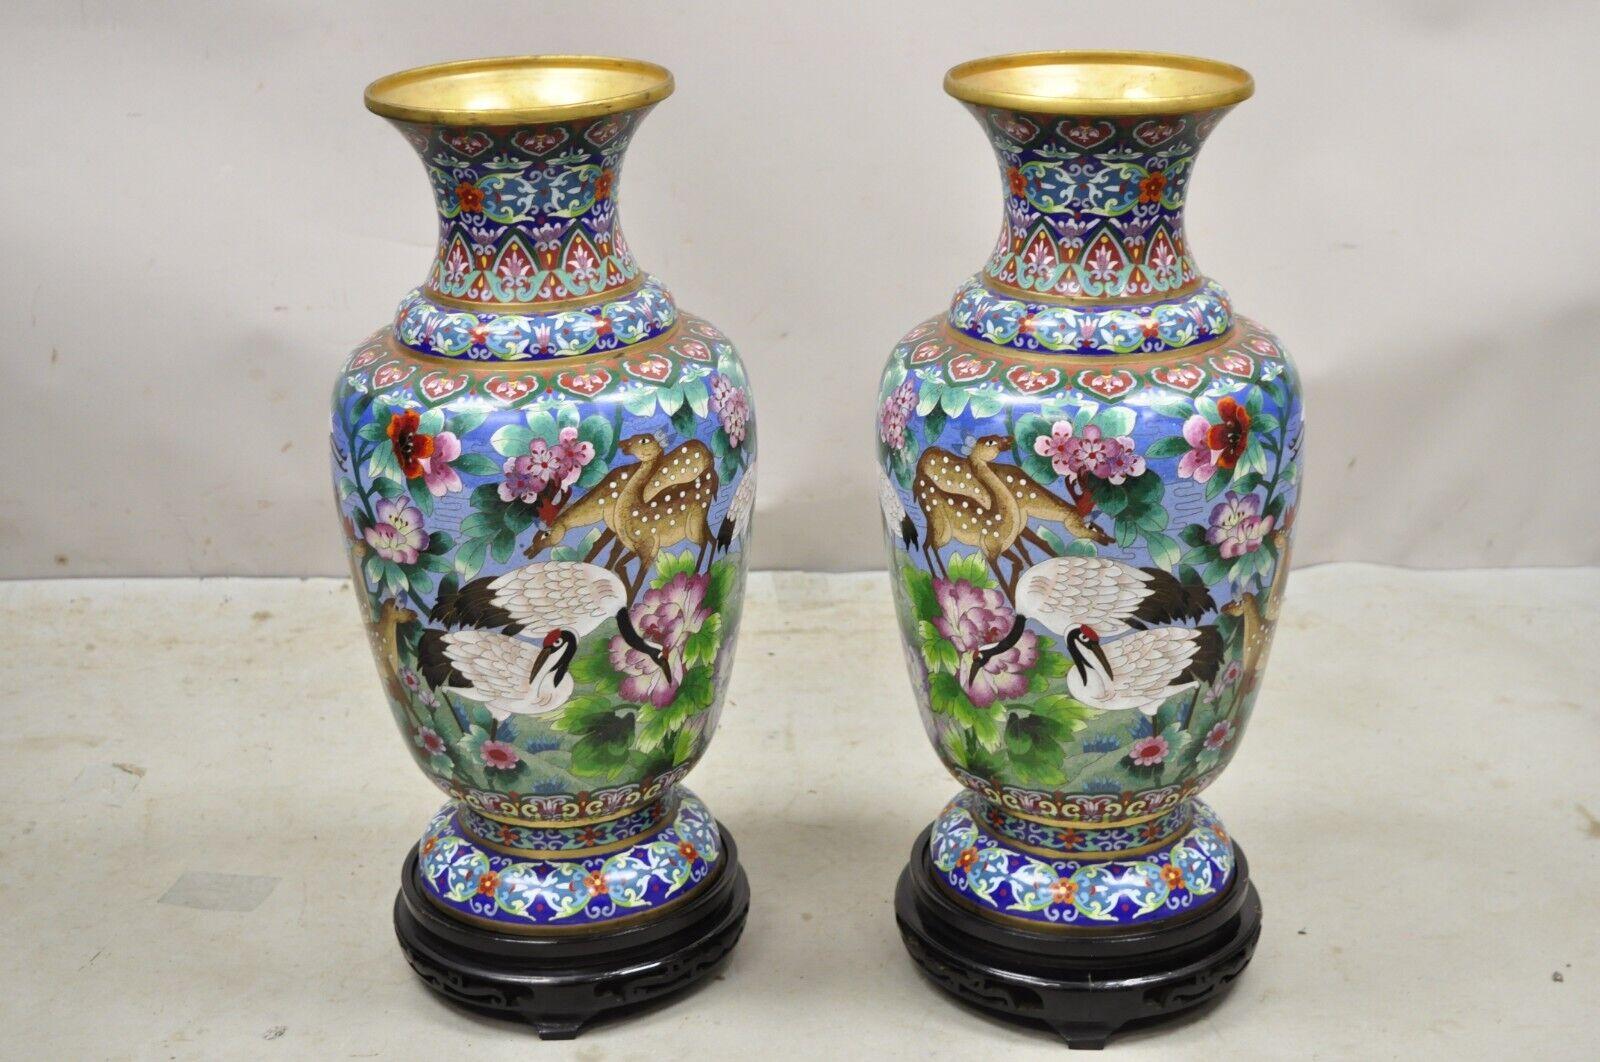 Vase à grue et cerf en porcelaine cloisonnée émaillée de Chine - une paire. L'objet comporte une base amovible en bois sculpté, des oiseaux grues, des cerfs et des fleurs sur l'ensemble de l'objet, une taille impressionnante, un style et une forme